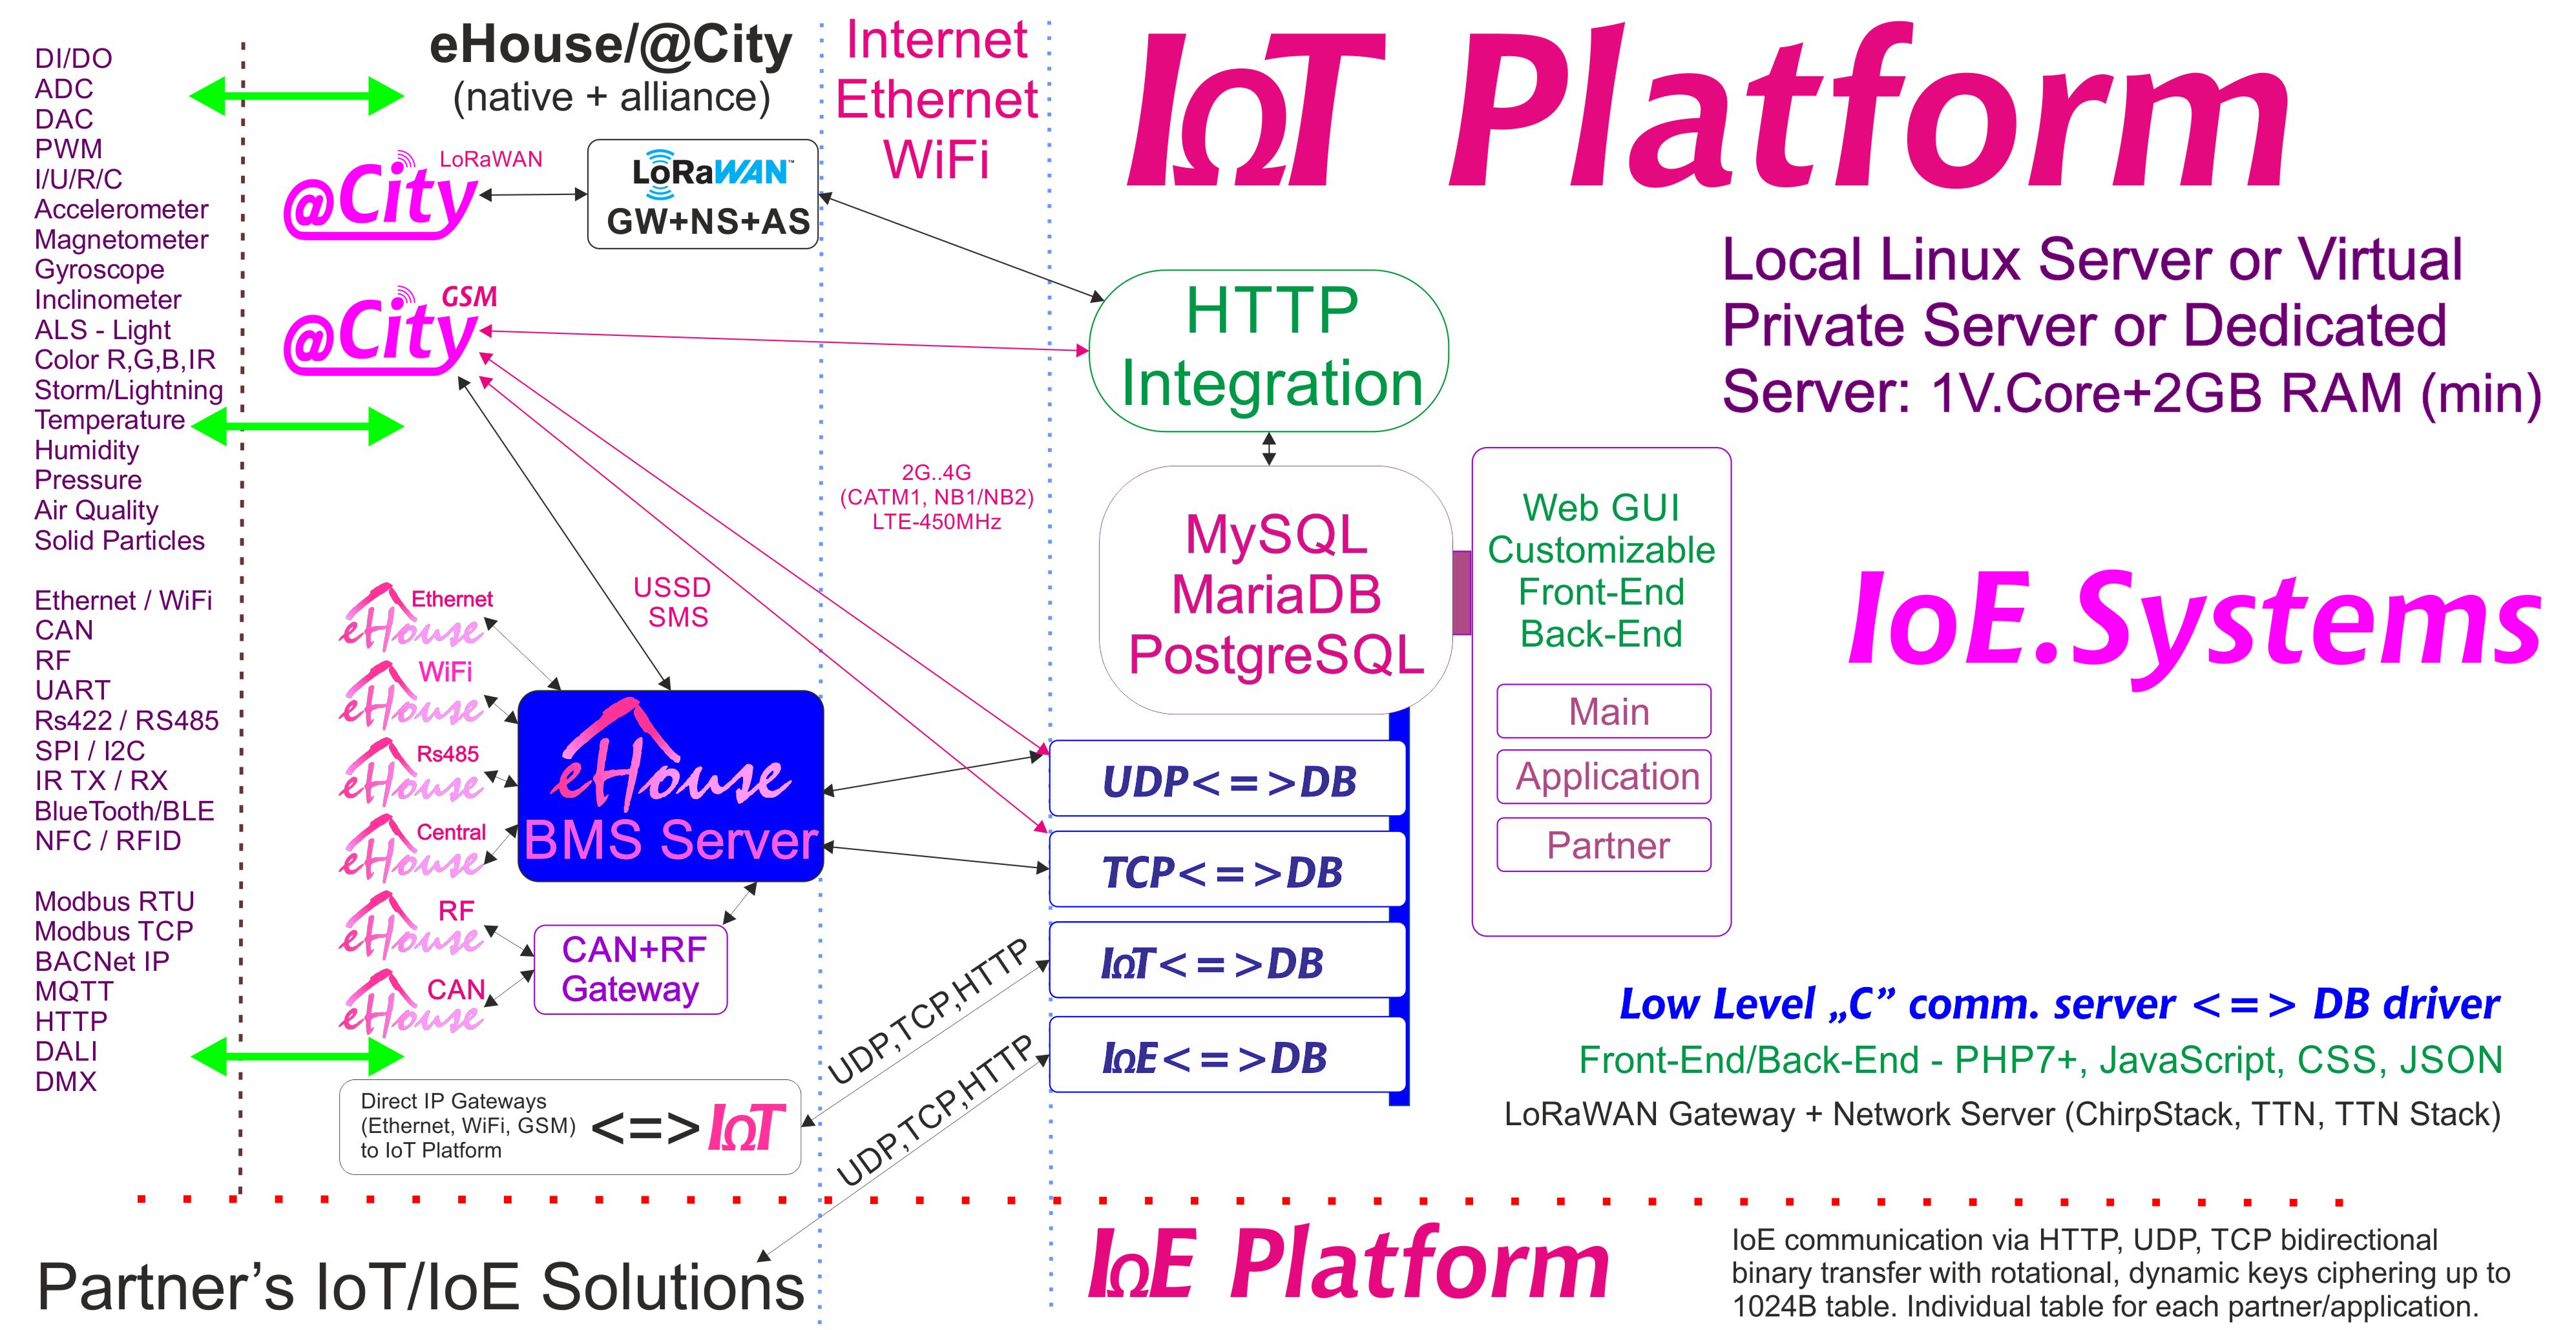 eHouse, eCity 서버 소프트웨어 BAS, BMS, IoE, IoT 시스템 및 플랫폼